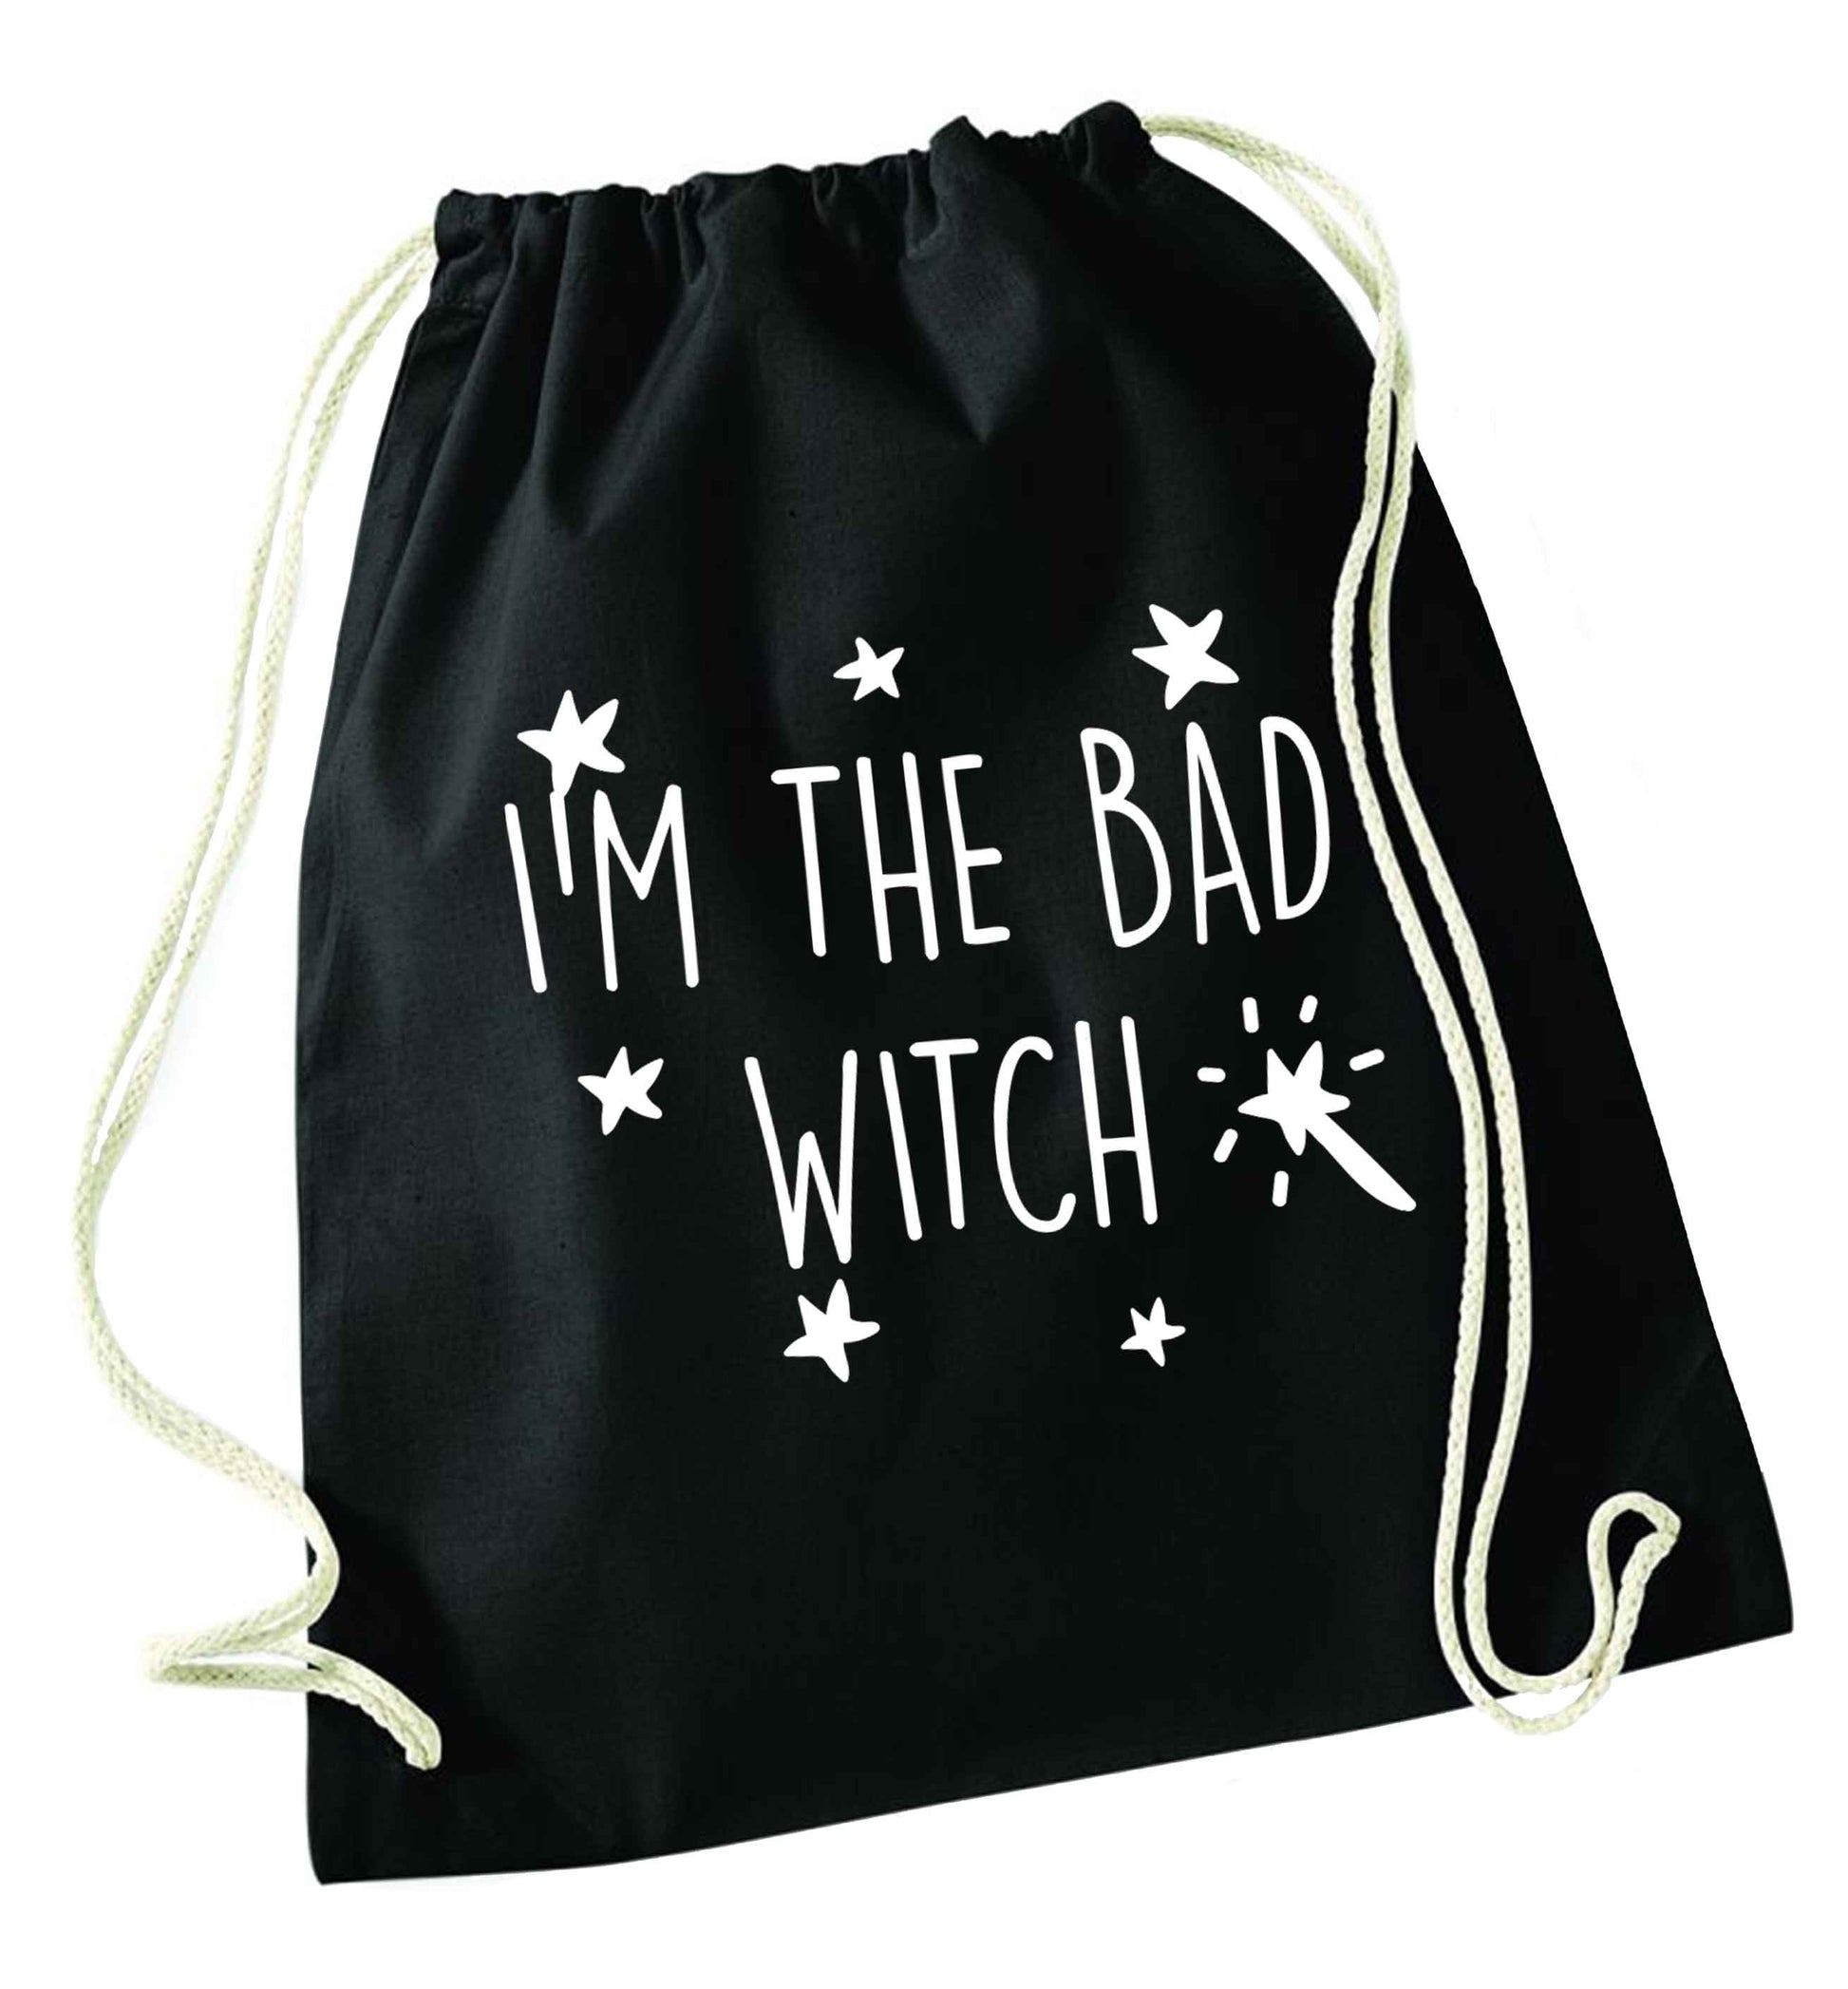 Bad witch black drawstring bag